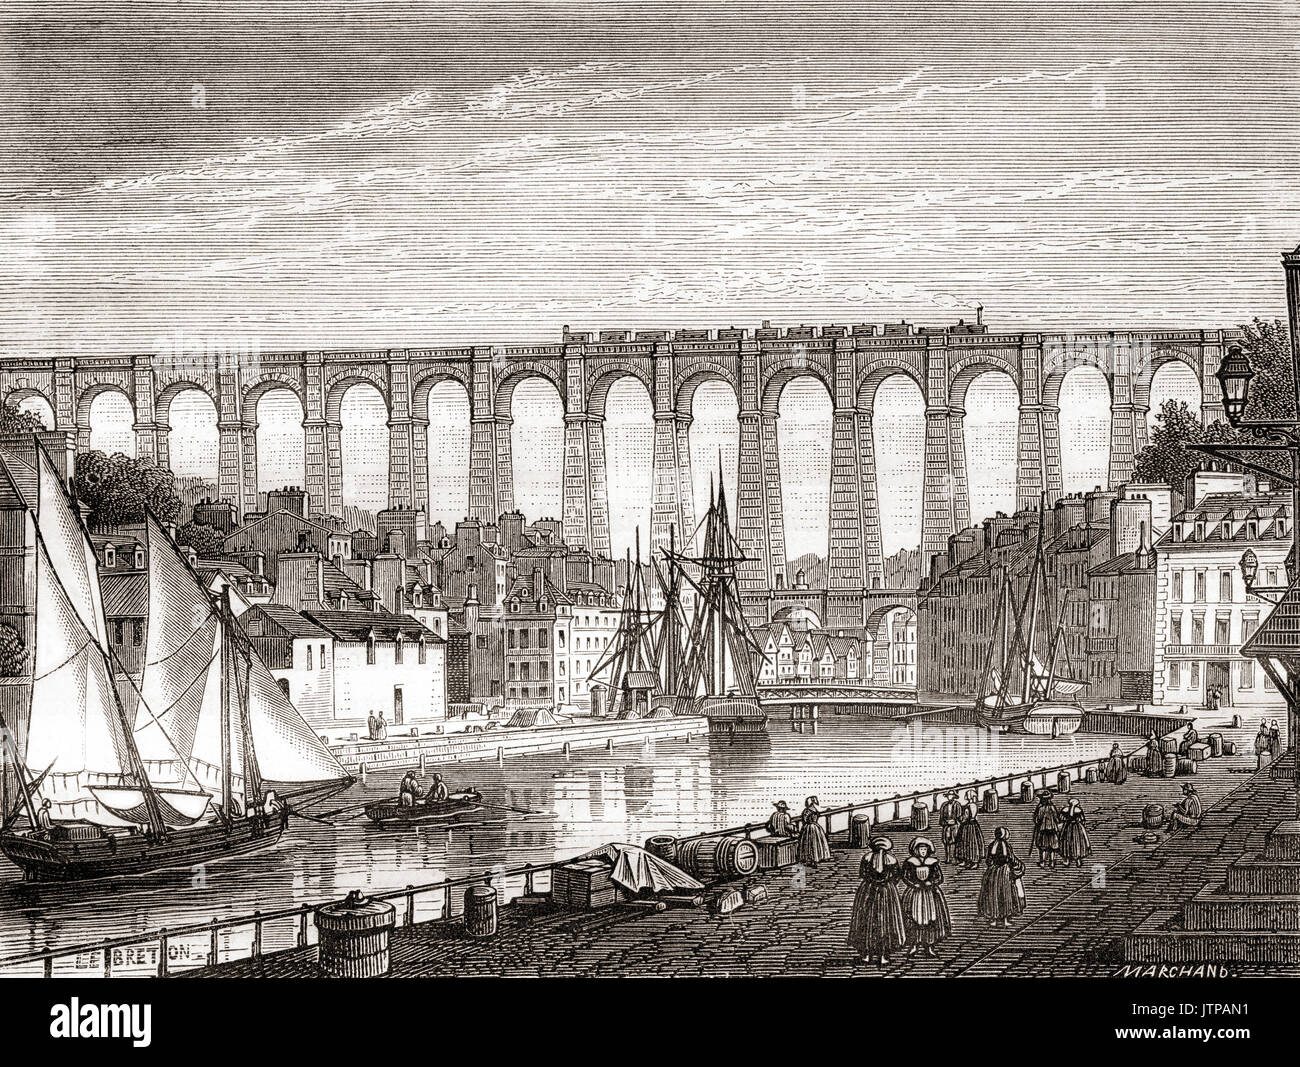 La linea ferroviaria da Parigi a Brest attraversando il viadotto di Morlaix, Francia,1863. Da Les Merveilles de la Science, pubblicato 1870. Foto Stock